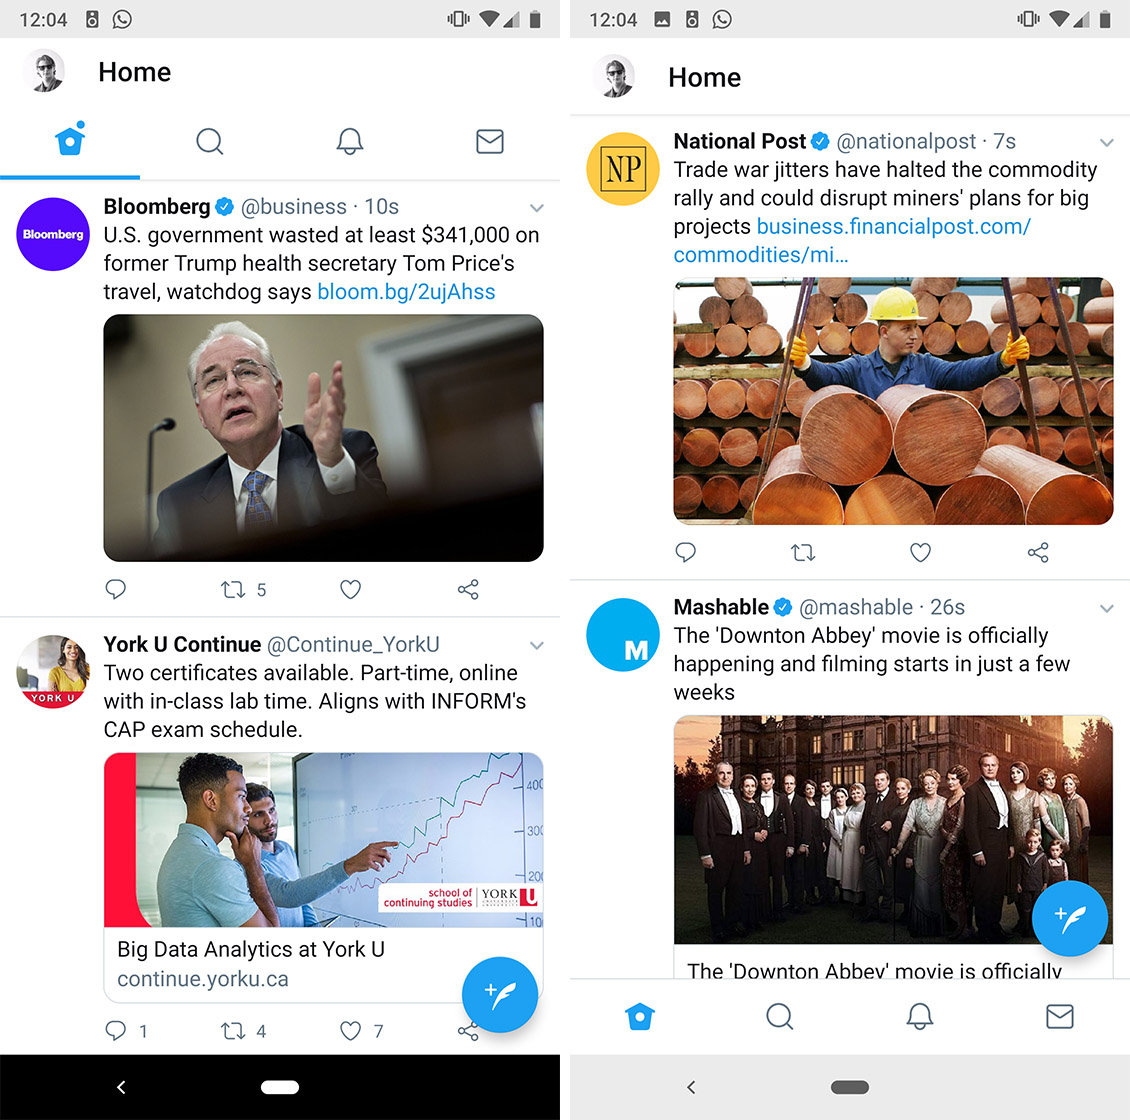 Screenshots of Twitter's bottom navigation bar